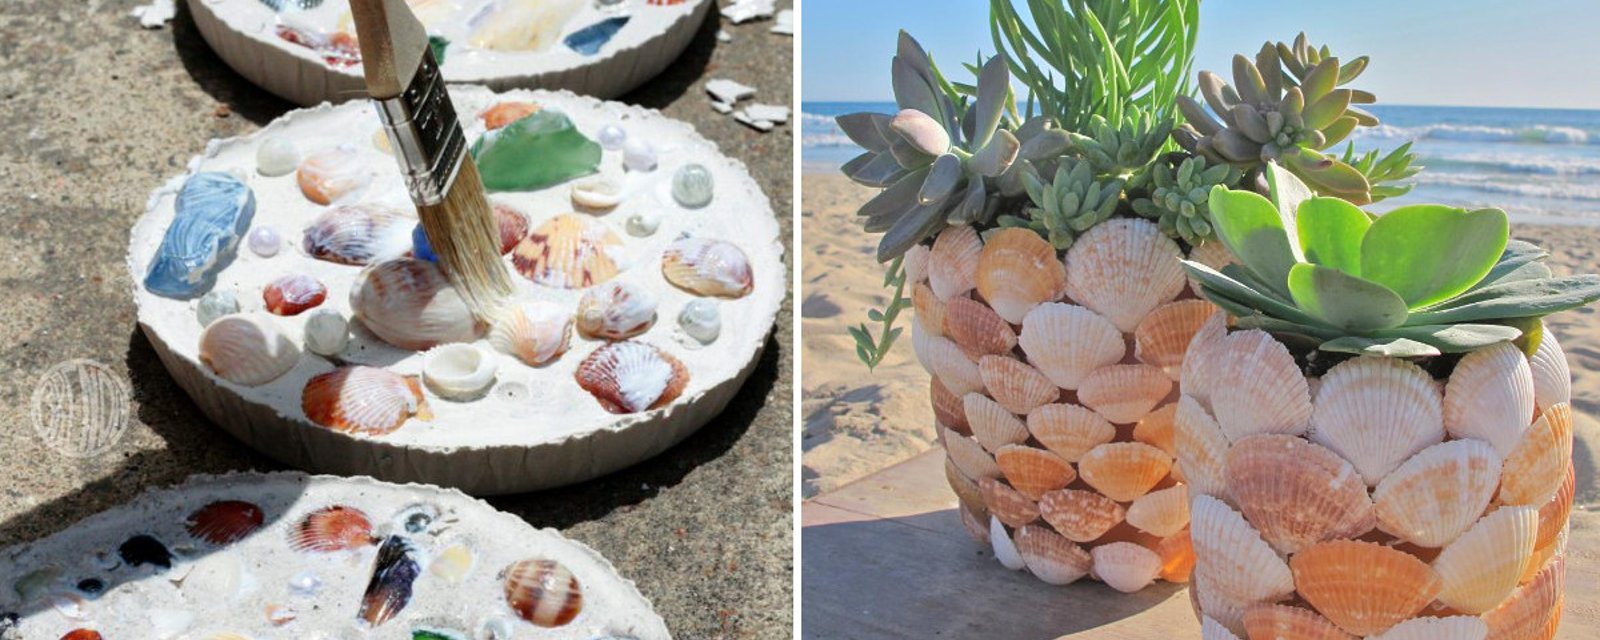 12 projets coquillages qui vous donneront envie de prendre des vacances sur une plage 